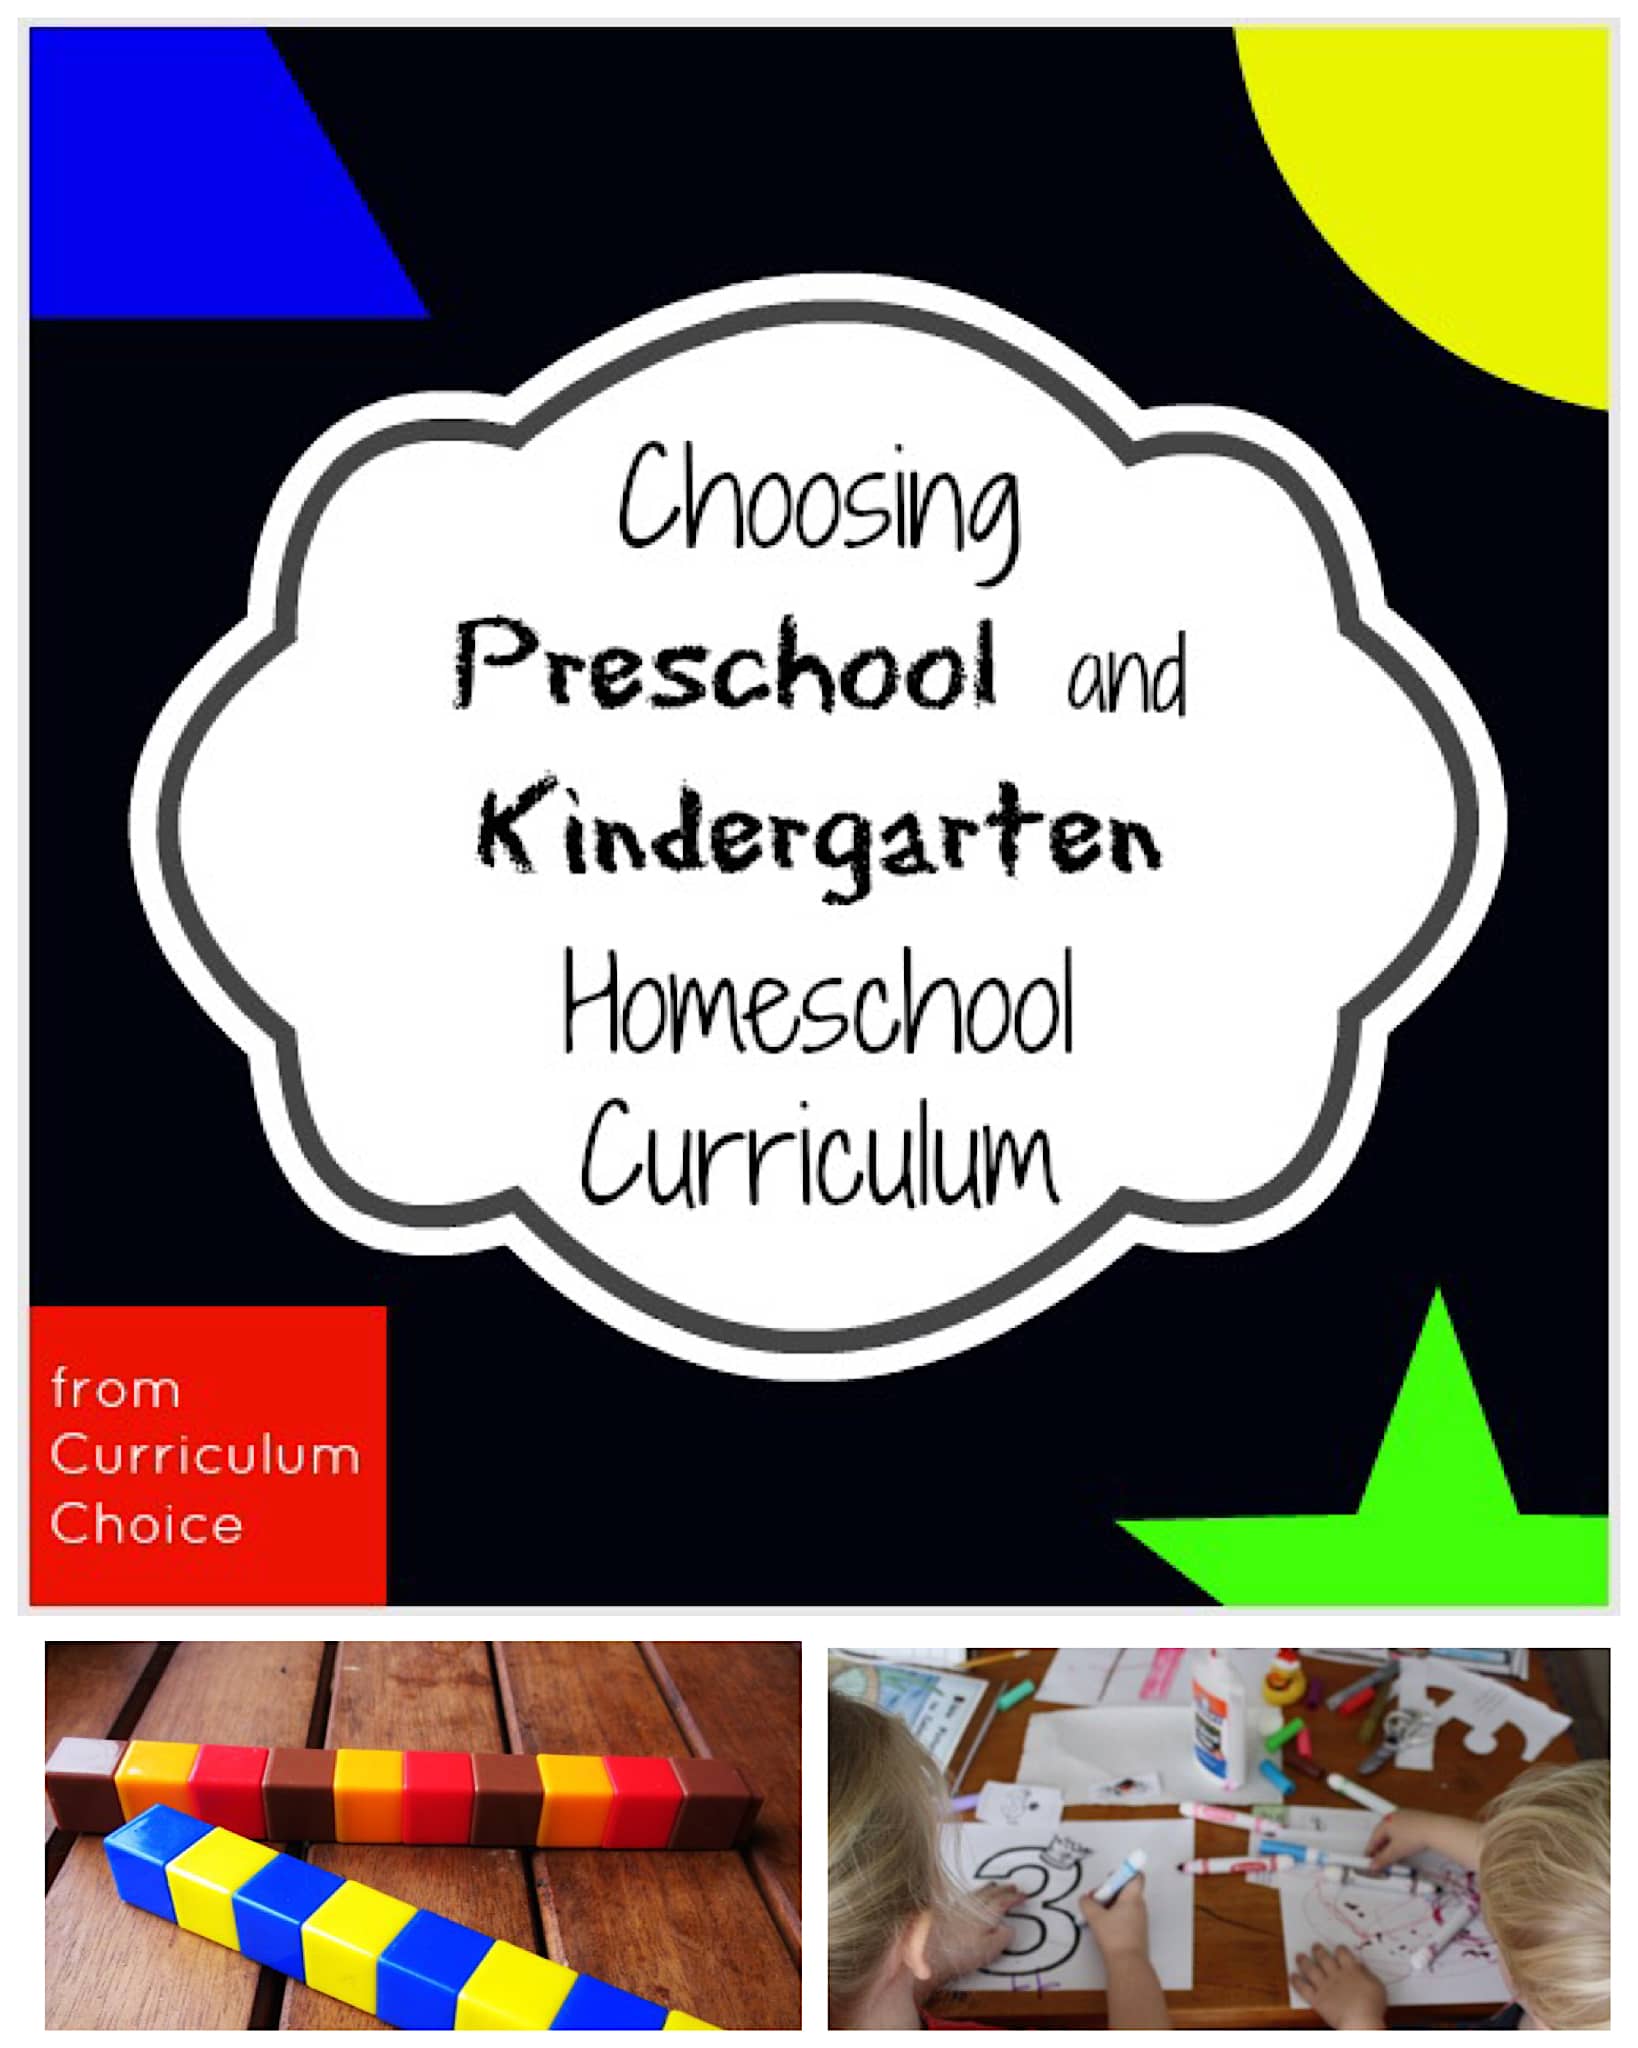 Choosing Preschool and Kindergarten Homeschool Curriculum